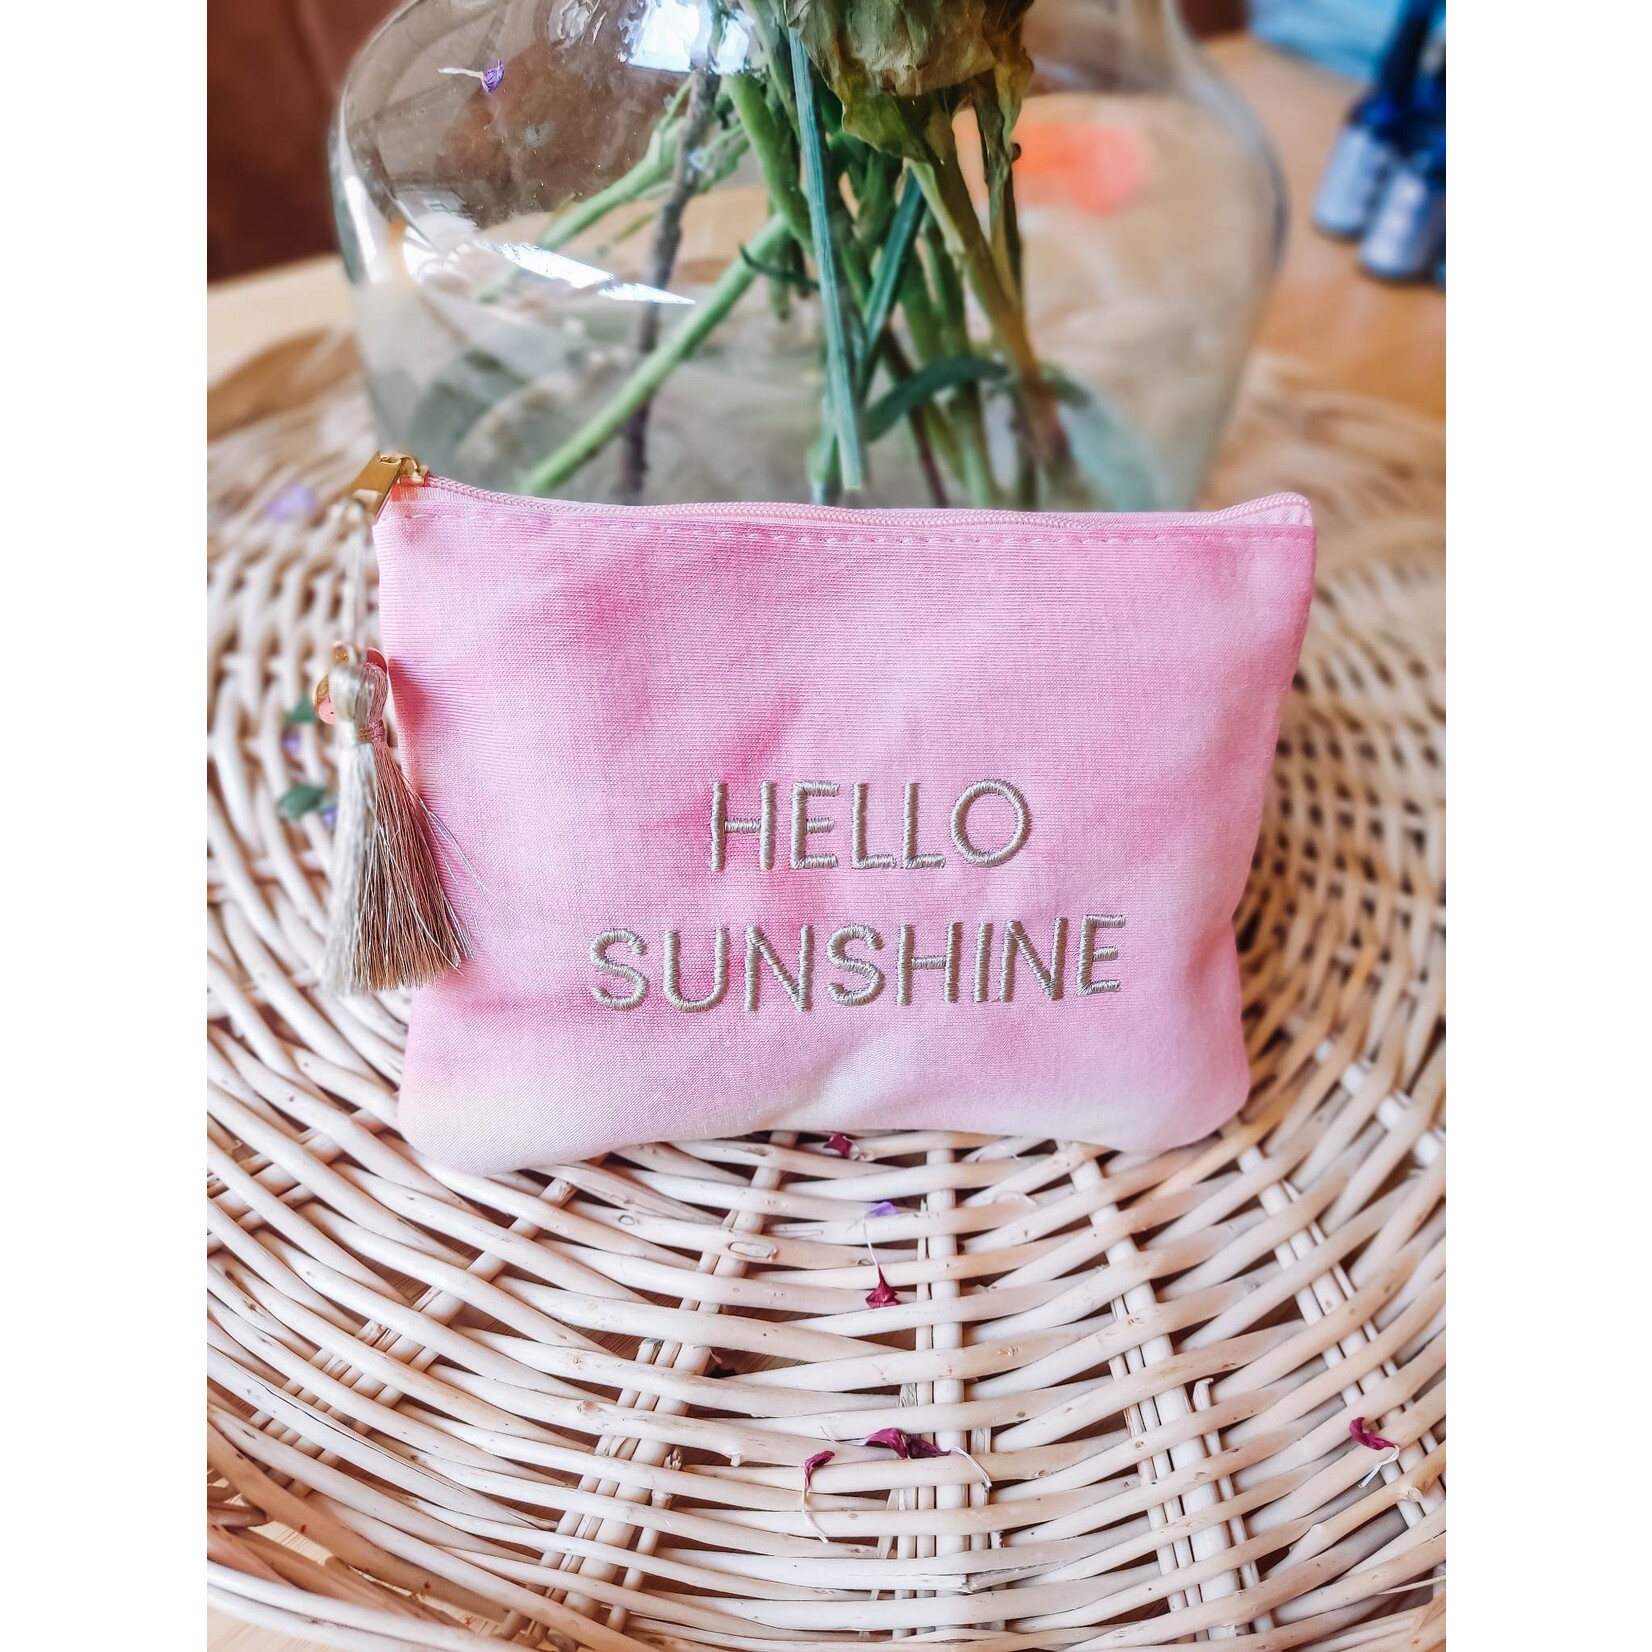 De wereld van Nina Hello sunshine! - zomertasje met mini's voor op reis